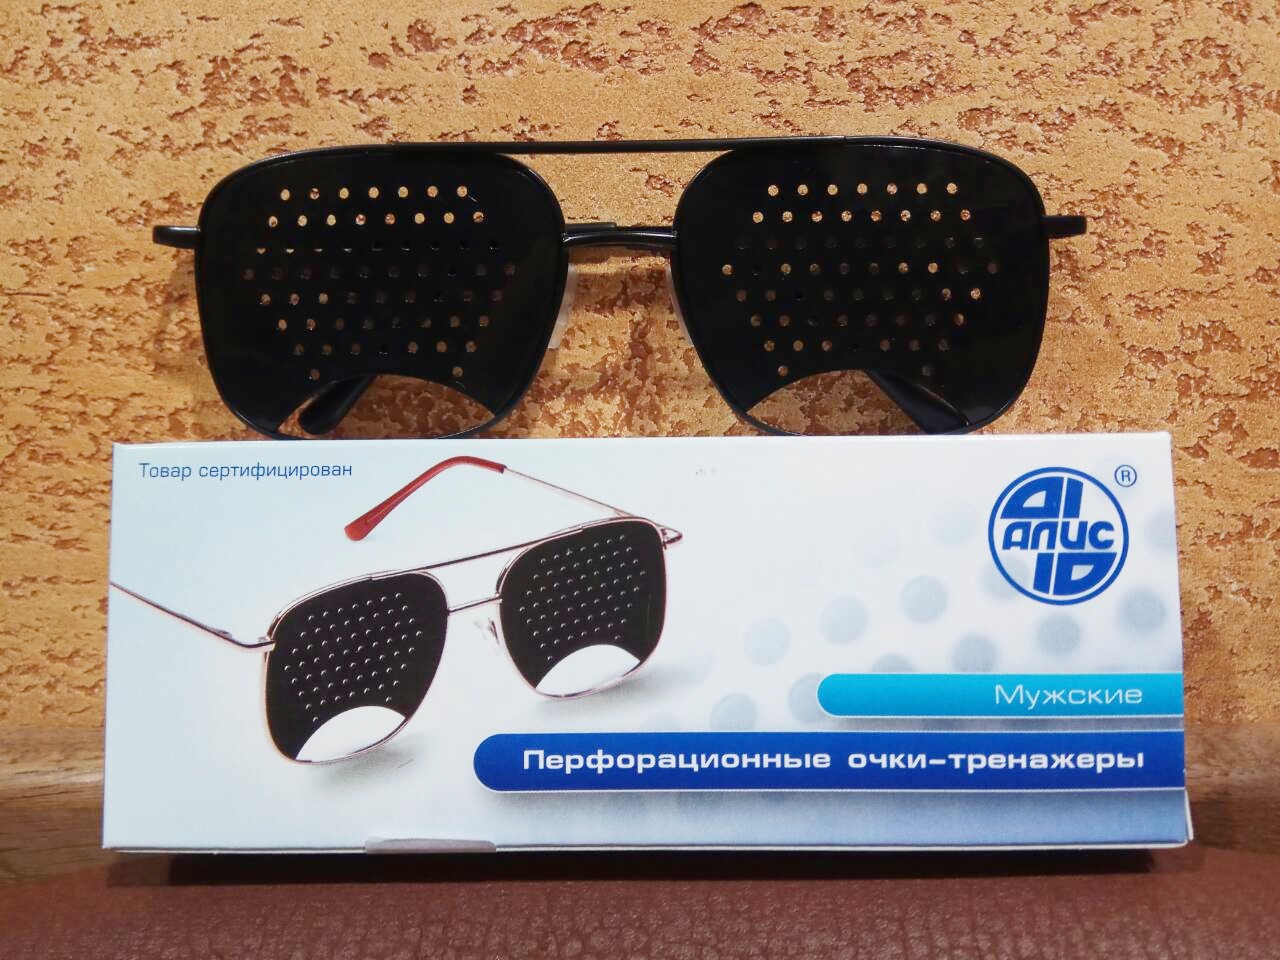 Очки тренажеры для улучшения зрения Федоровские - МУЖСКИЕ, качество Алис - 96